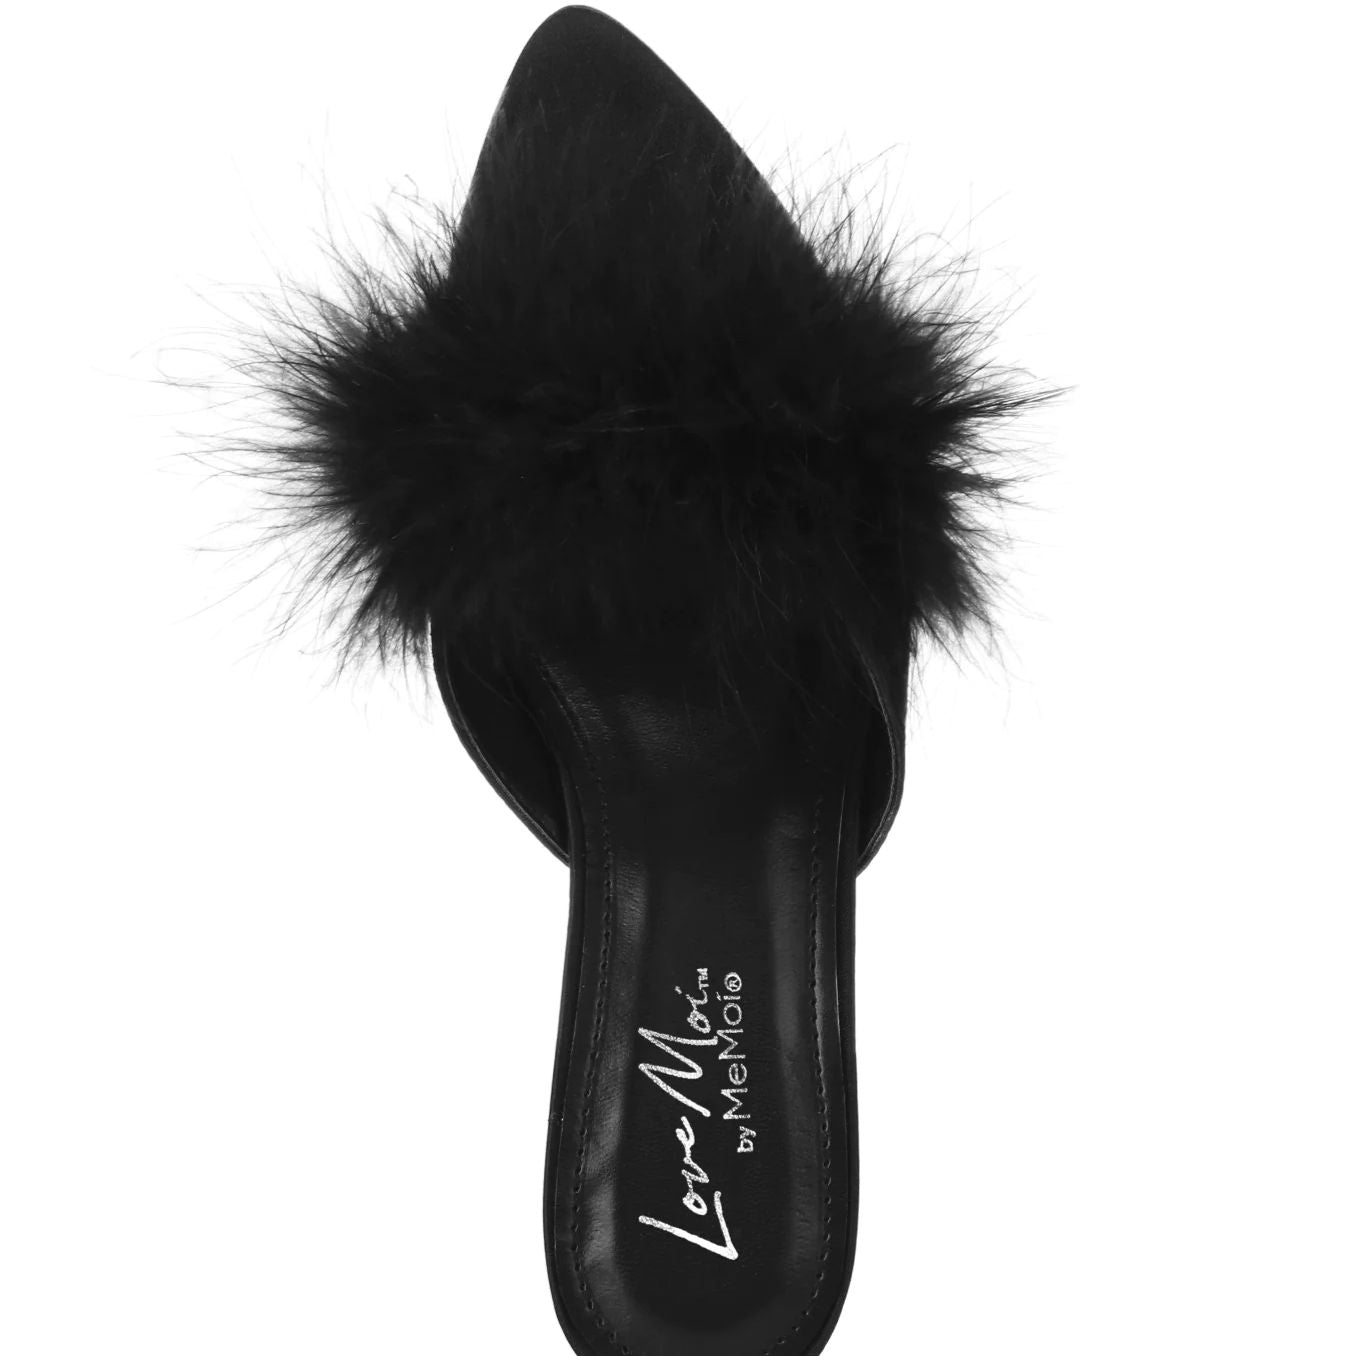 MeMoi Mona Marabou Slippers in Black LOV8500-Socks & Slippers-MeMoi-Black-Small-Anna Bella Fine Lingerie, Reveal Your Most Gorgeous Self!